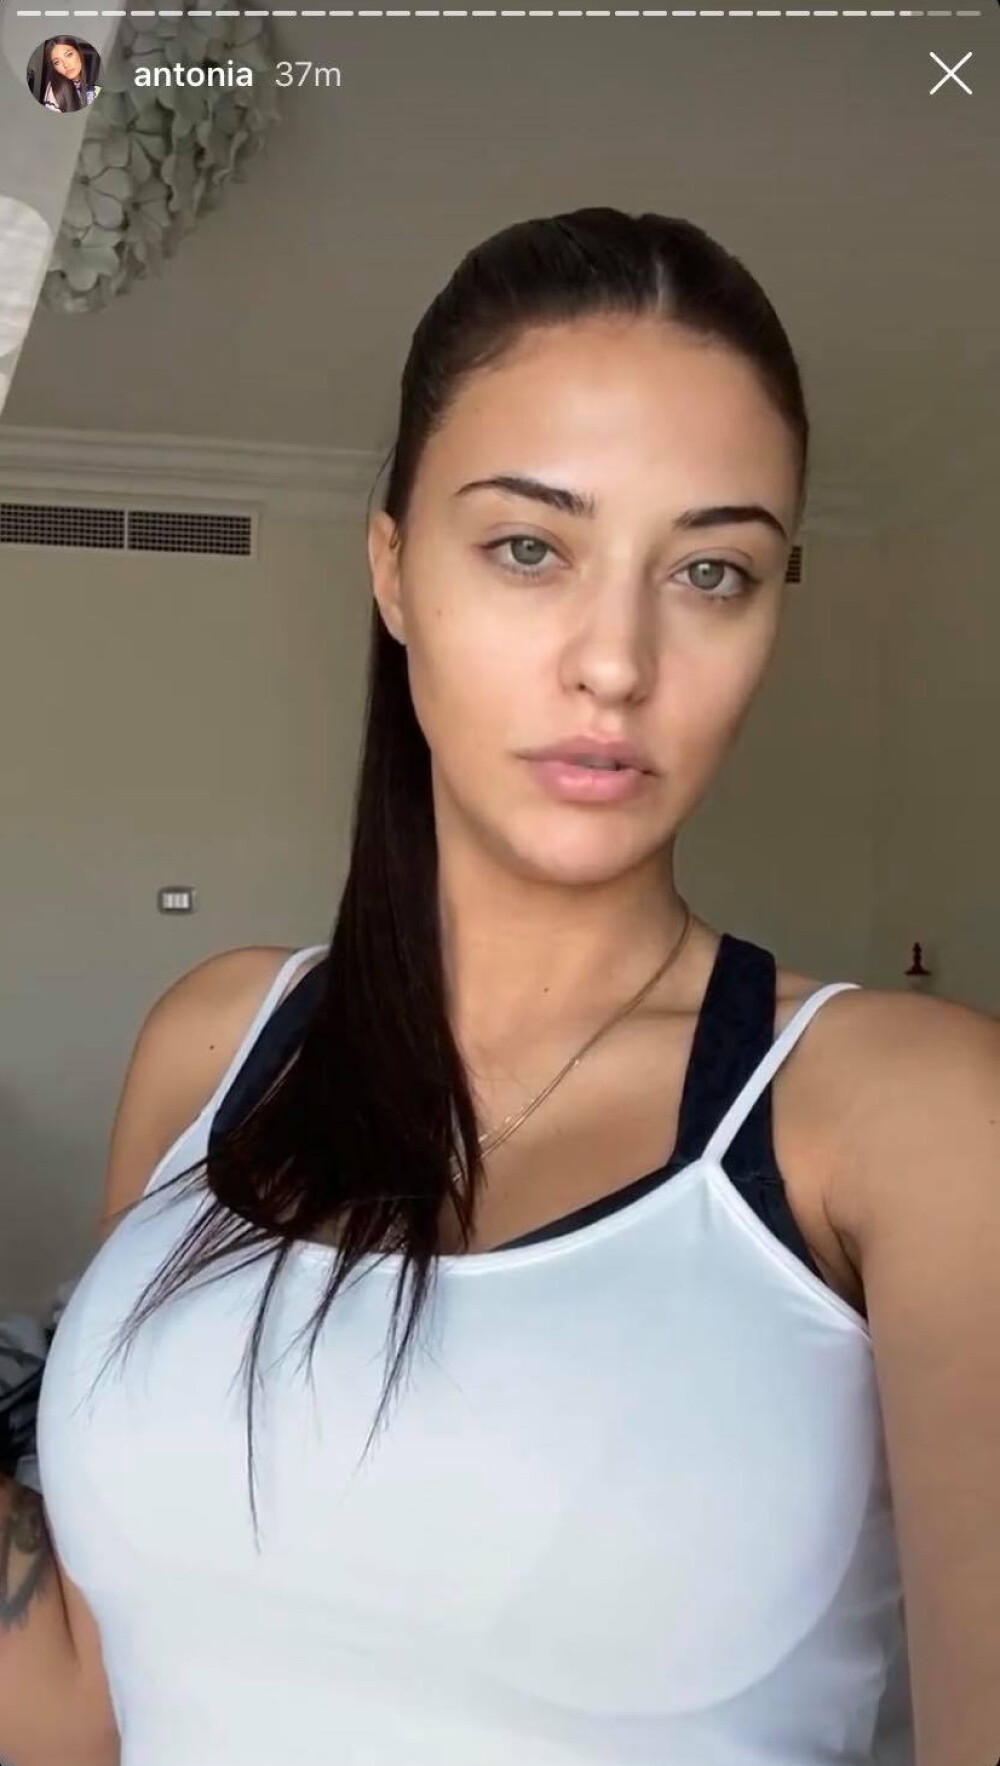 VIDEO: Antonia a lansat un clip cu scene senzuale între ea și o femeie: ”Cam indecent” - Imaginea 13